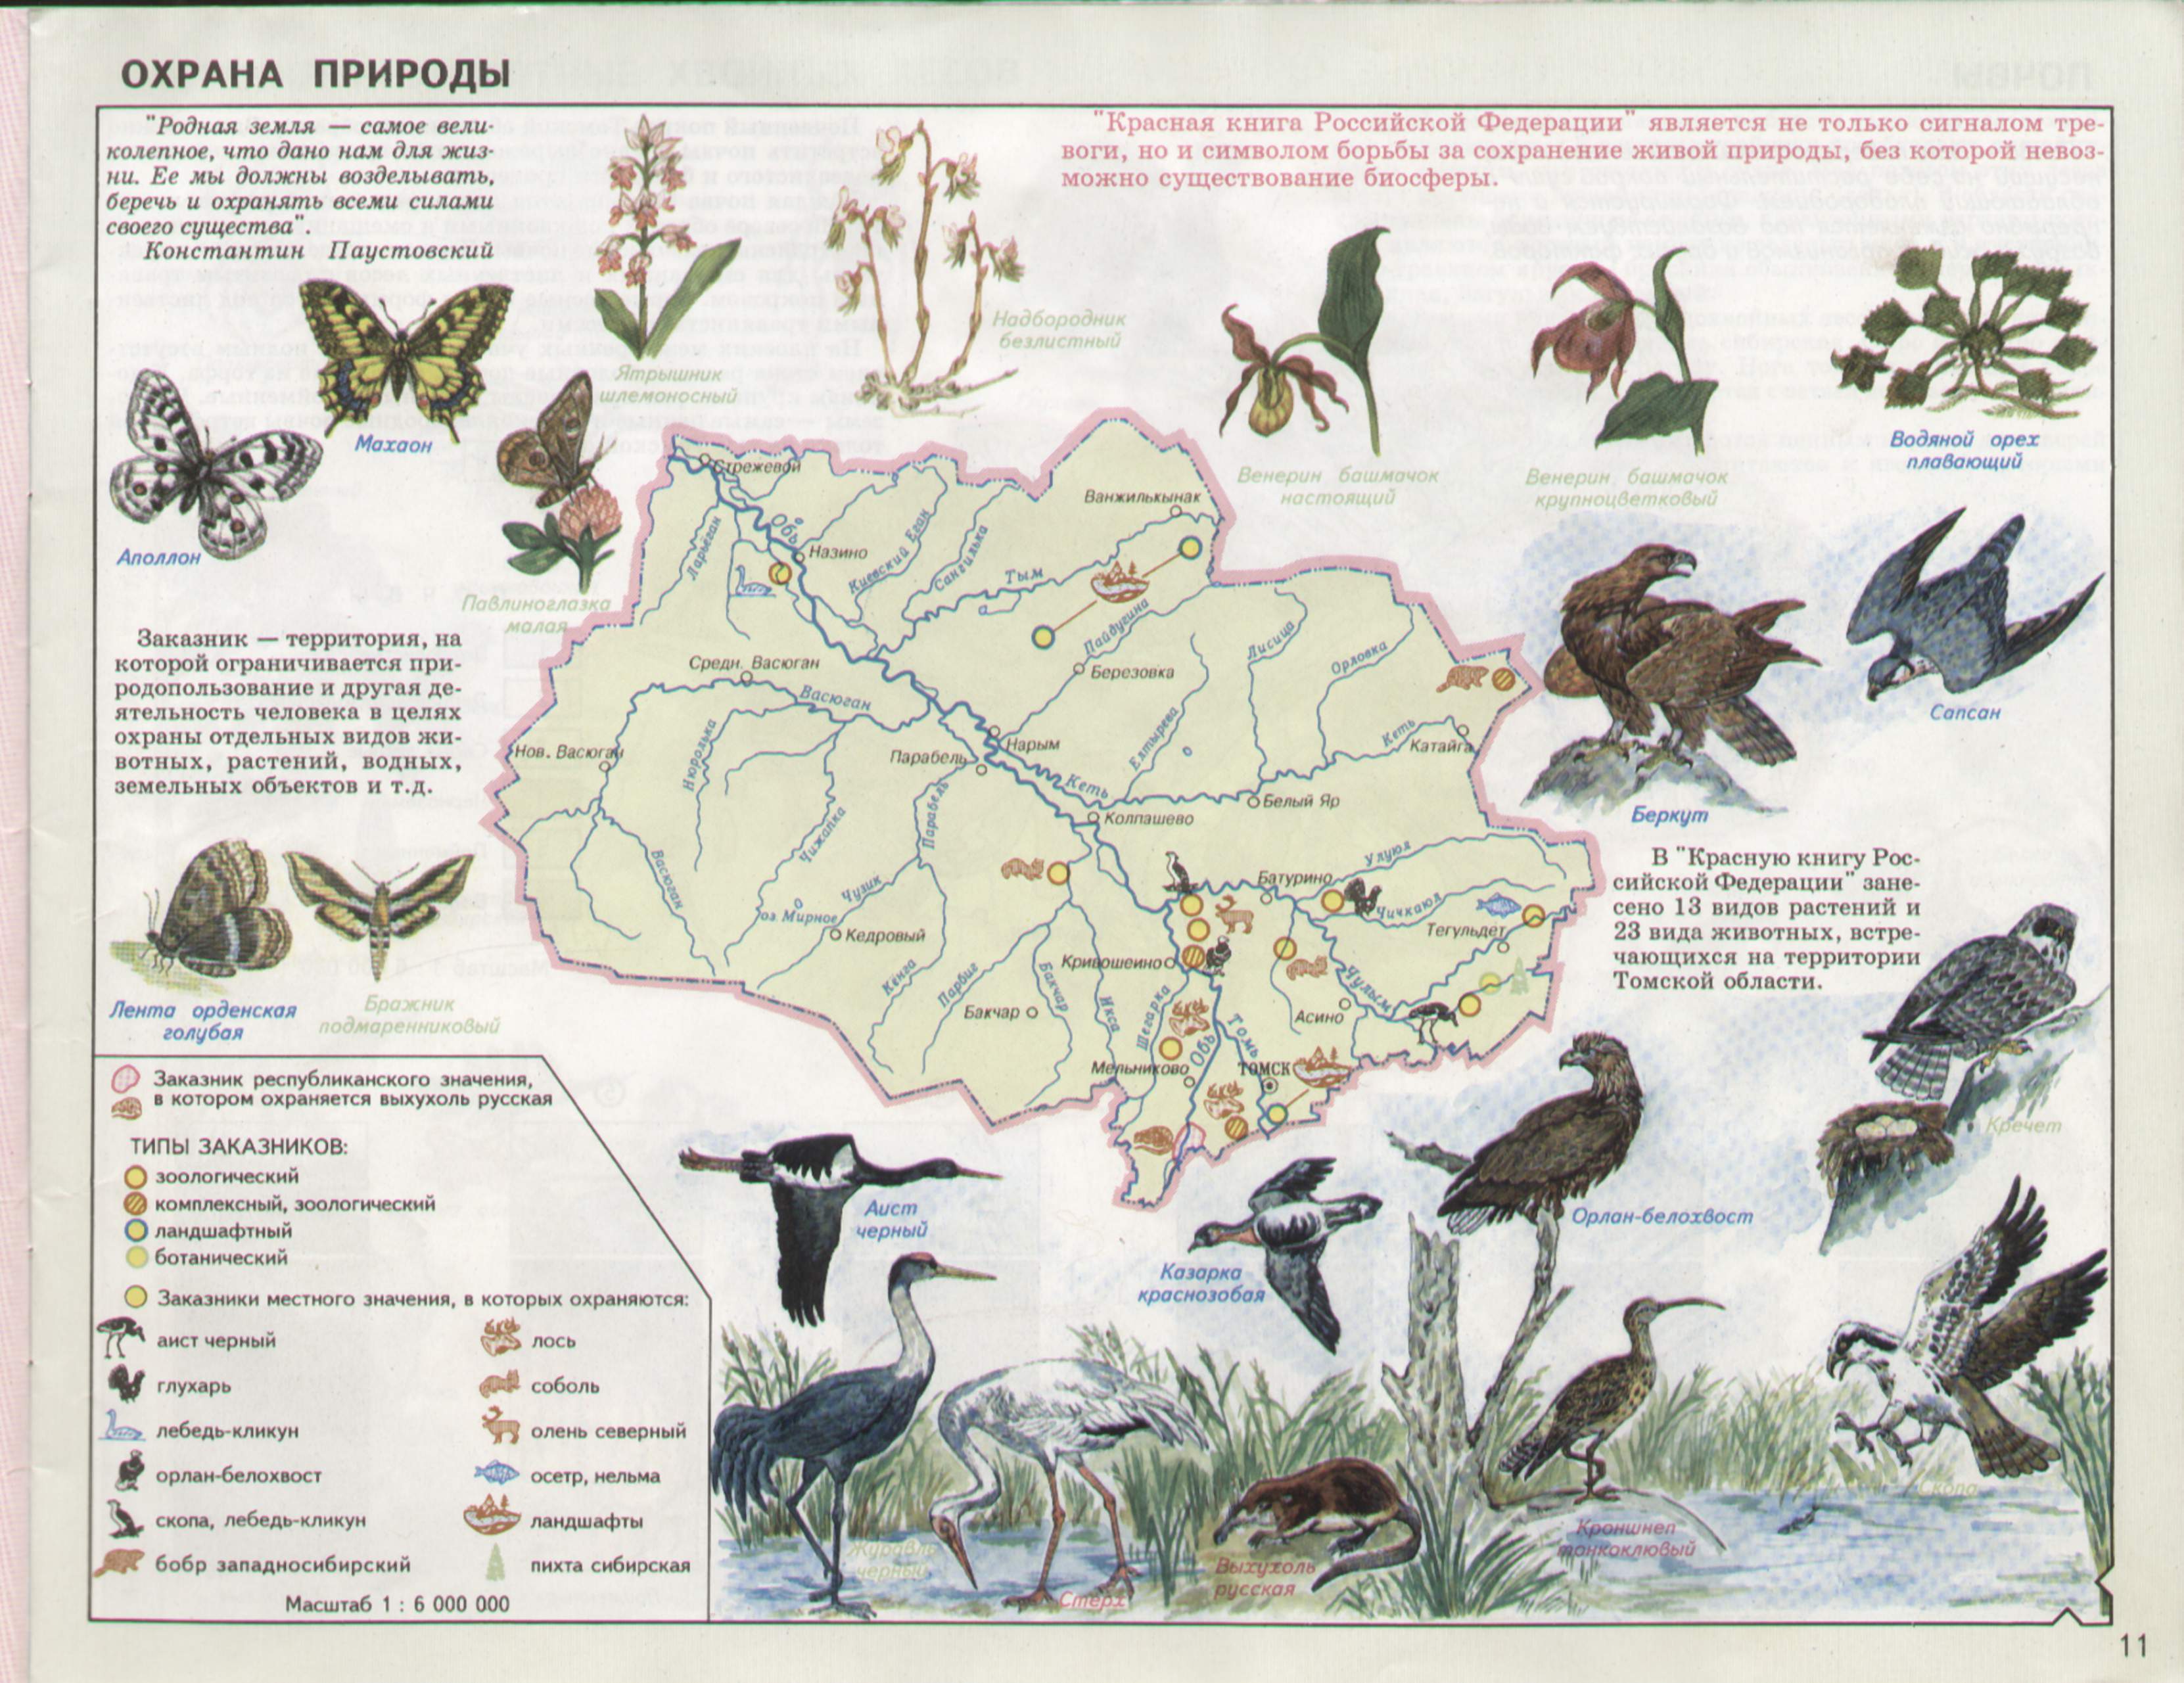 Атлас обитатели леса Новосибирской области